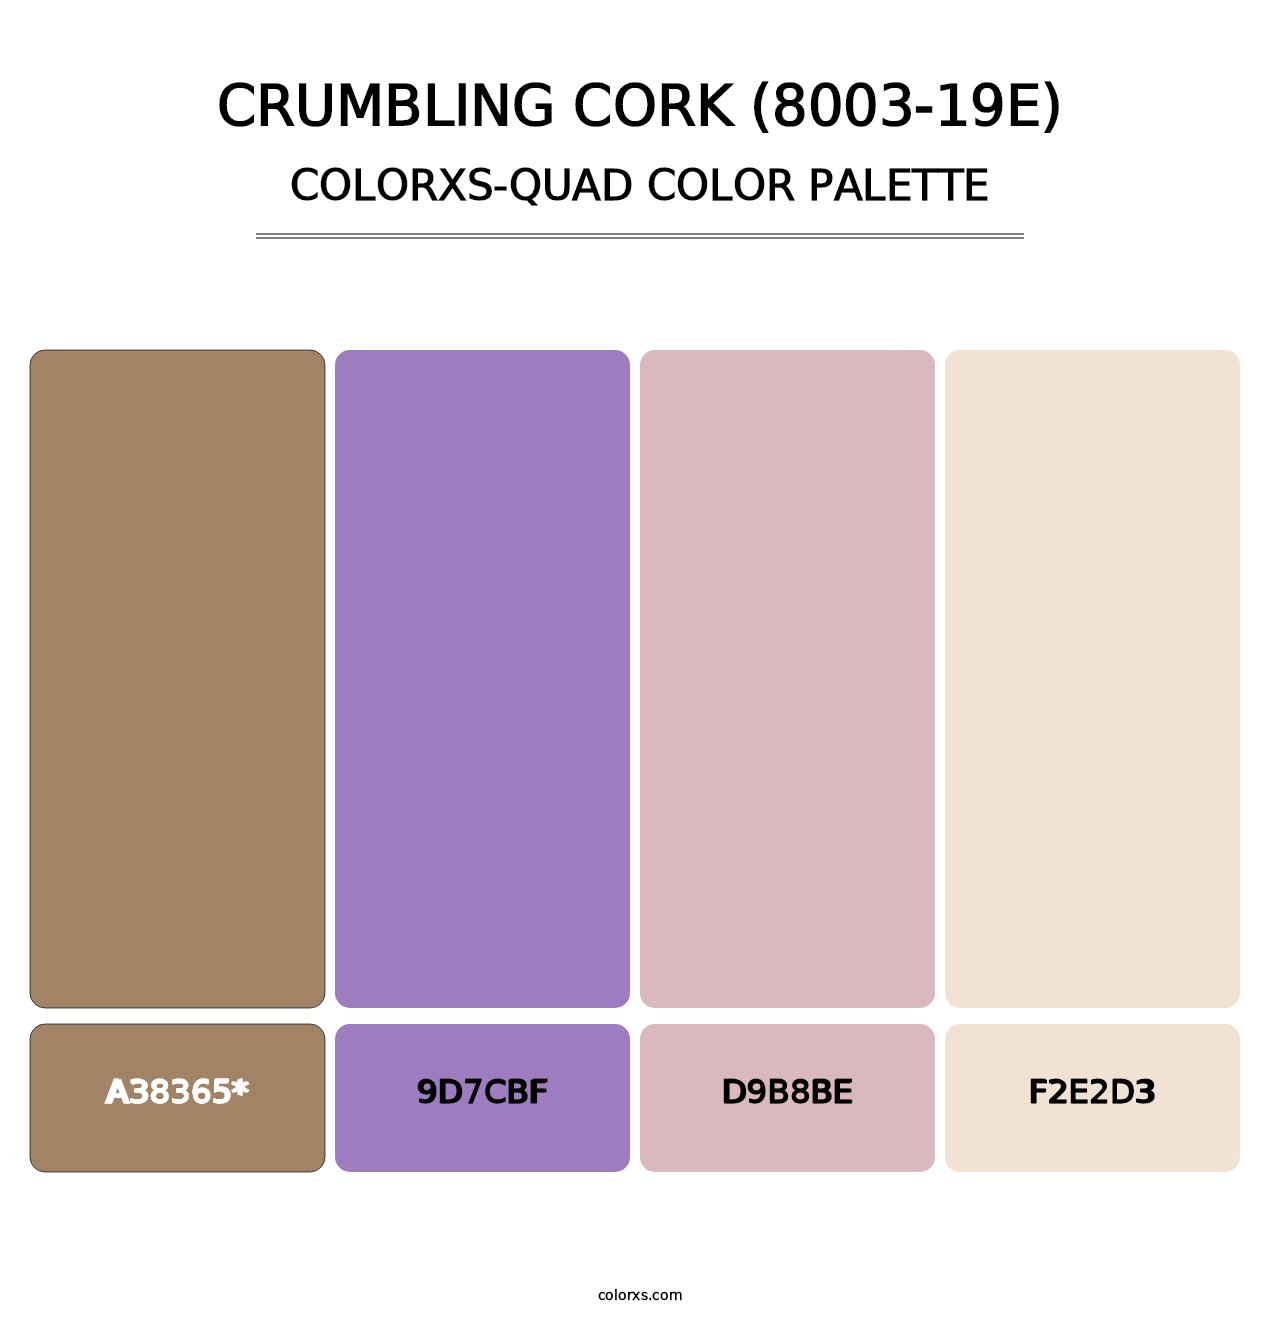 Crumbling Cork (8003-19E) - Colorxs Quad Palette